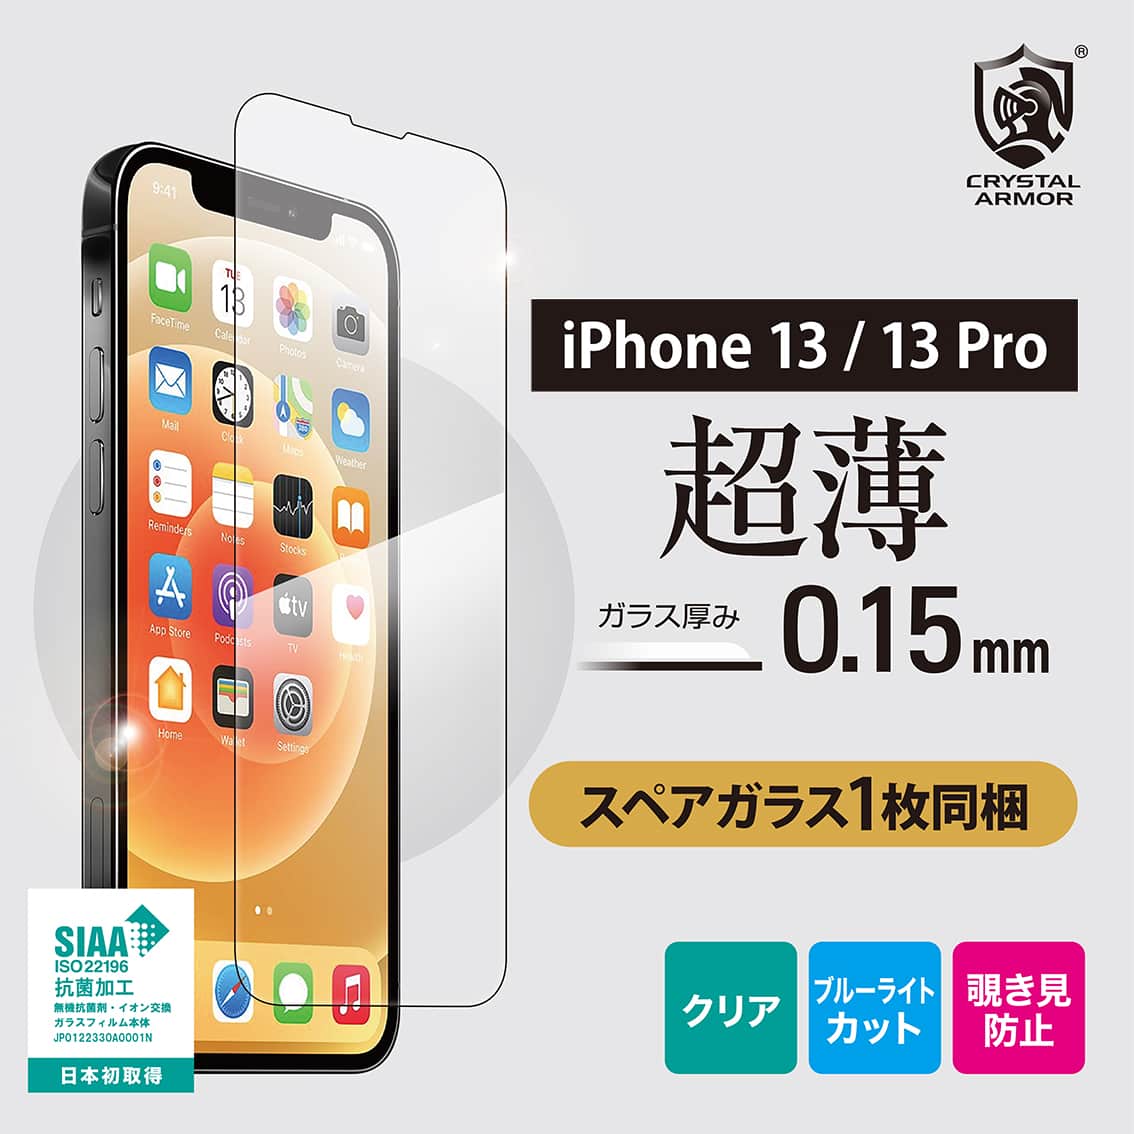 新型  iPhone13 / 13Pro 対応 超薄 0.15mm ガラスフィルム クリア ブルーライトカット 覗き見防止 iPhone 2021年モデル 6.1インチ